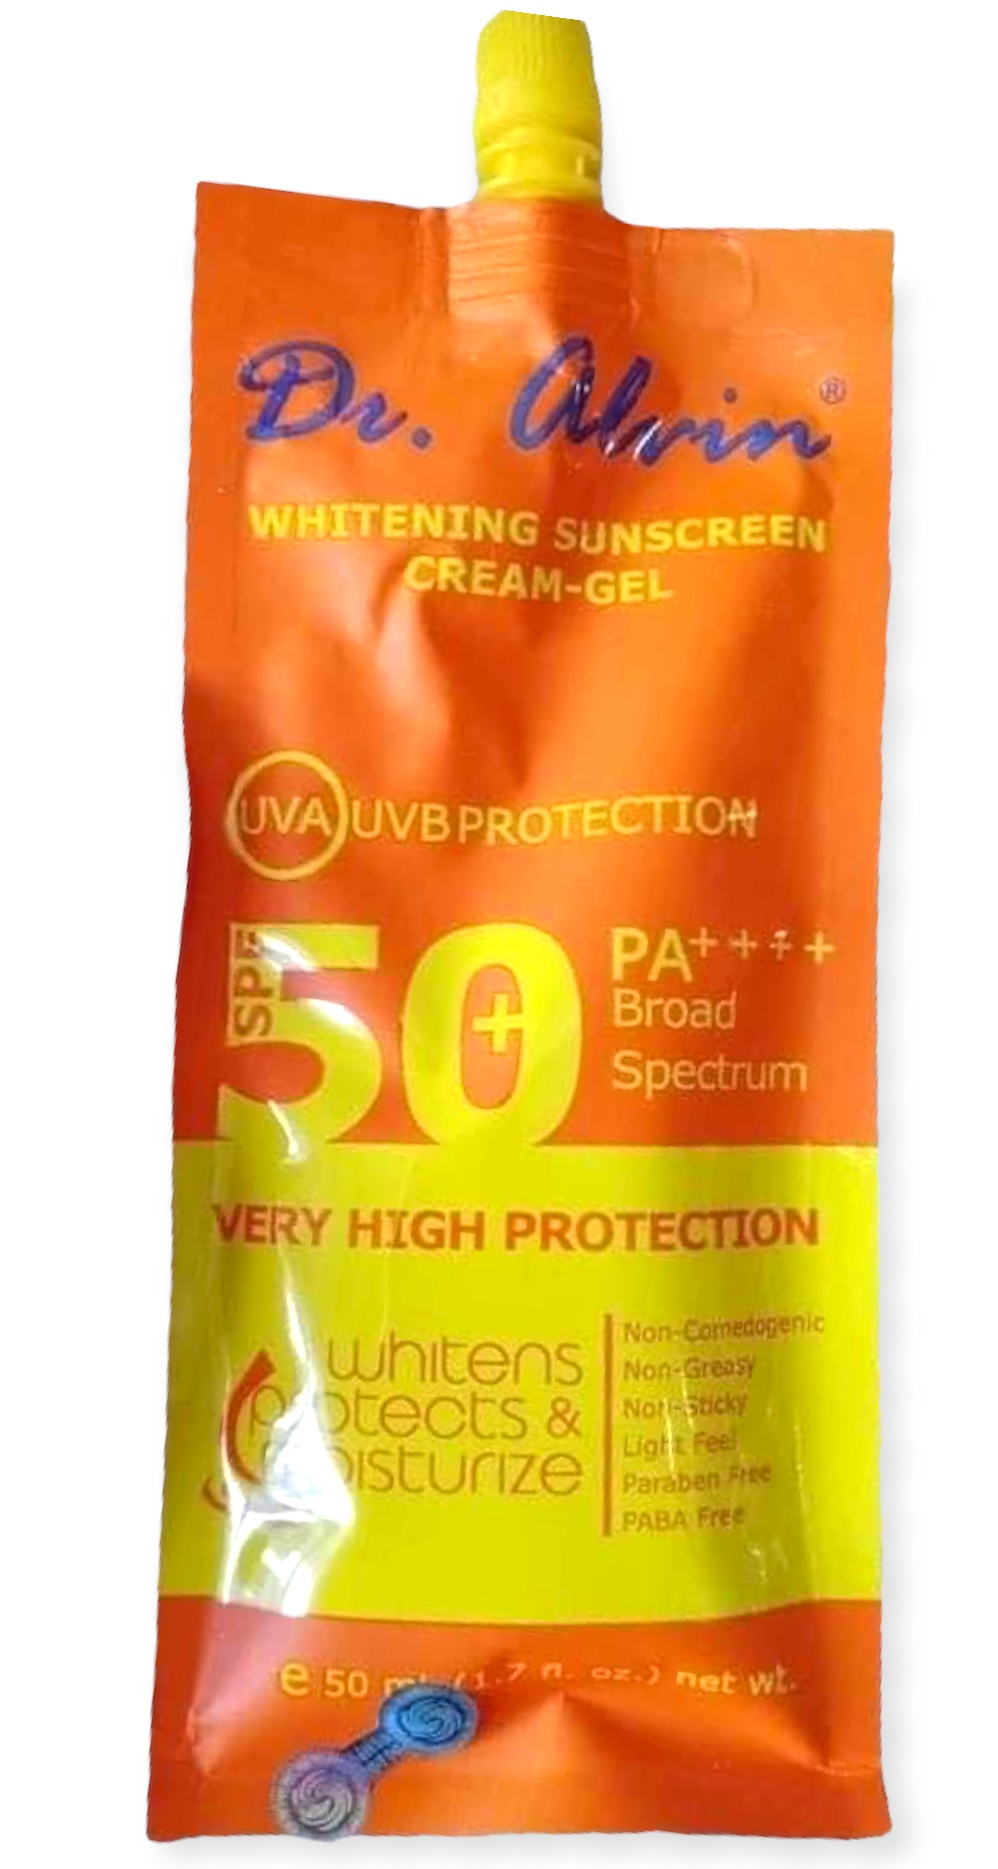 Dr. Alvin Whitening Sunscreen Cream-gel